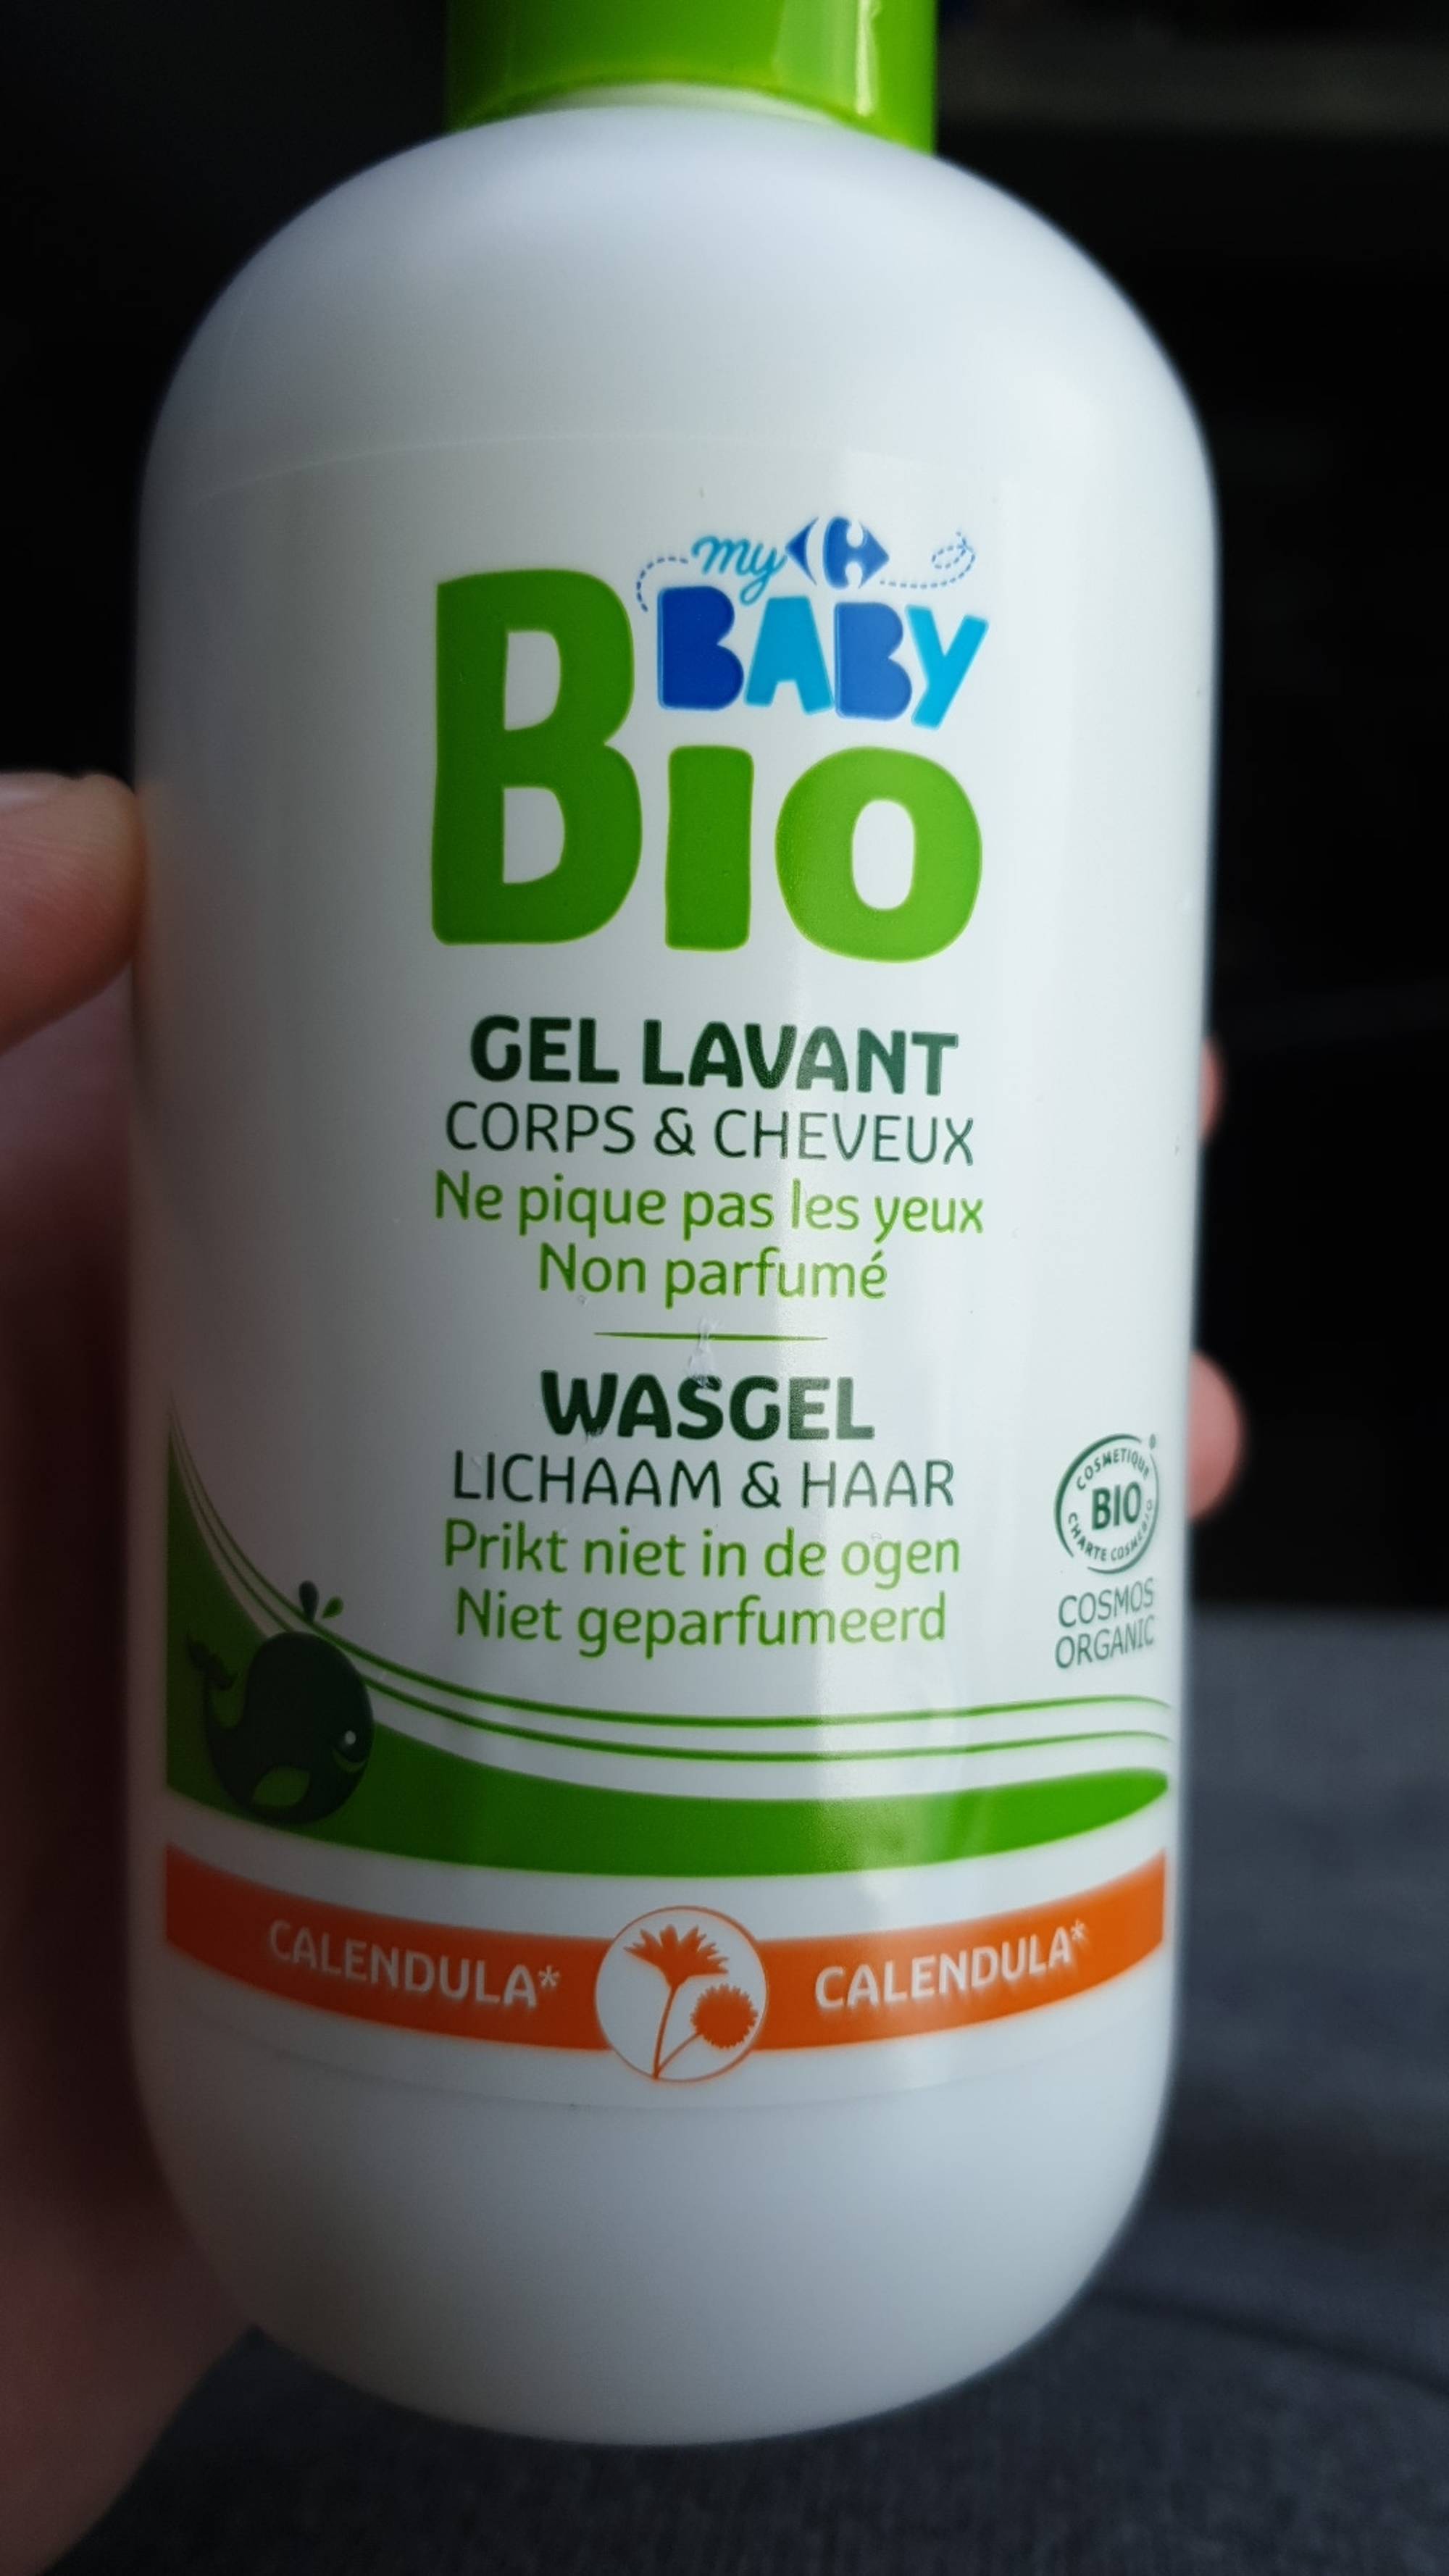 Carrefour Gel Lavant Baby Bio corps et cheveux, ne pique pas les yeux sans  parfum - Calendula - INCI Beauty